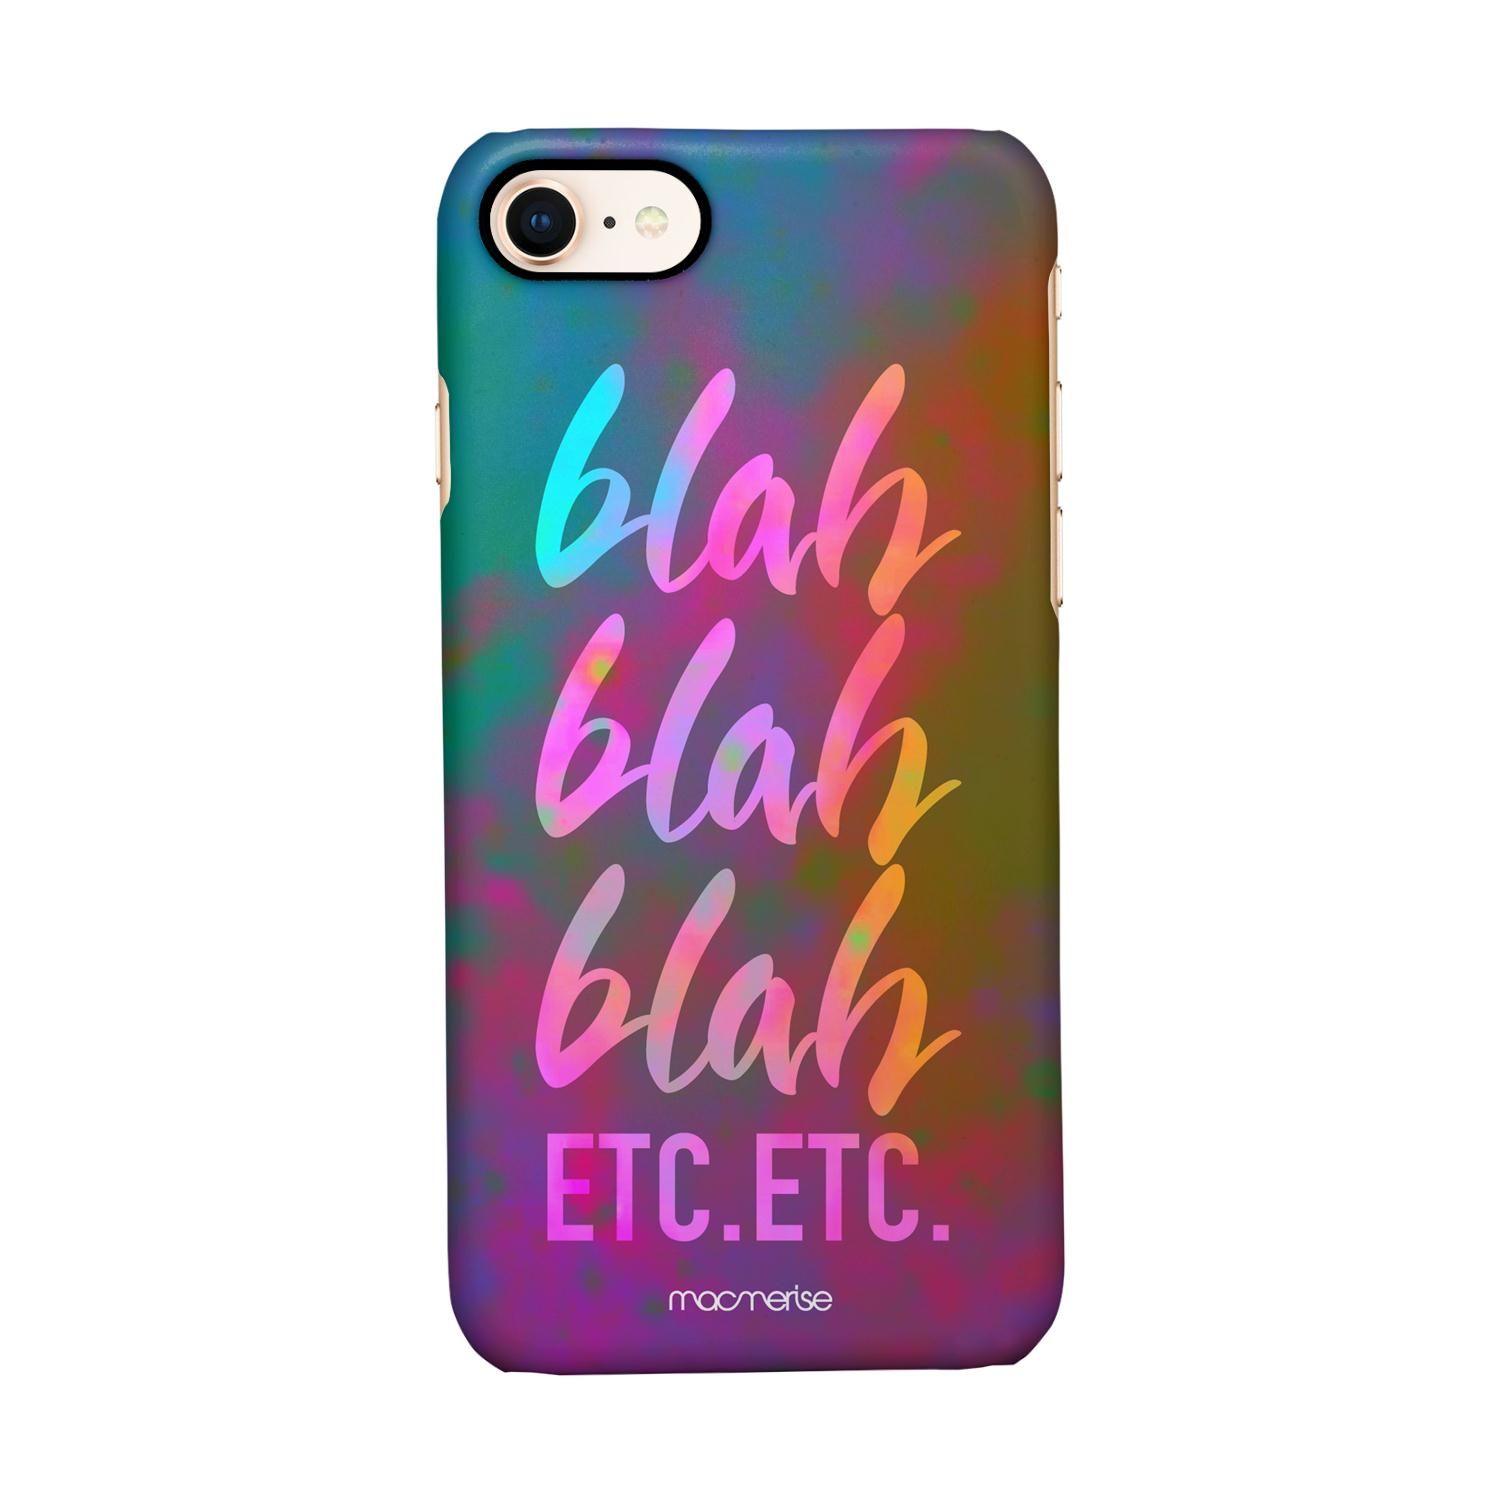 Buy Blah Blah - Sleek Phone Case for iPhone 8 Online